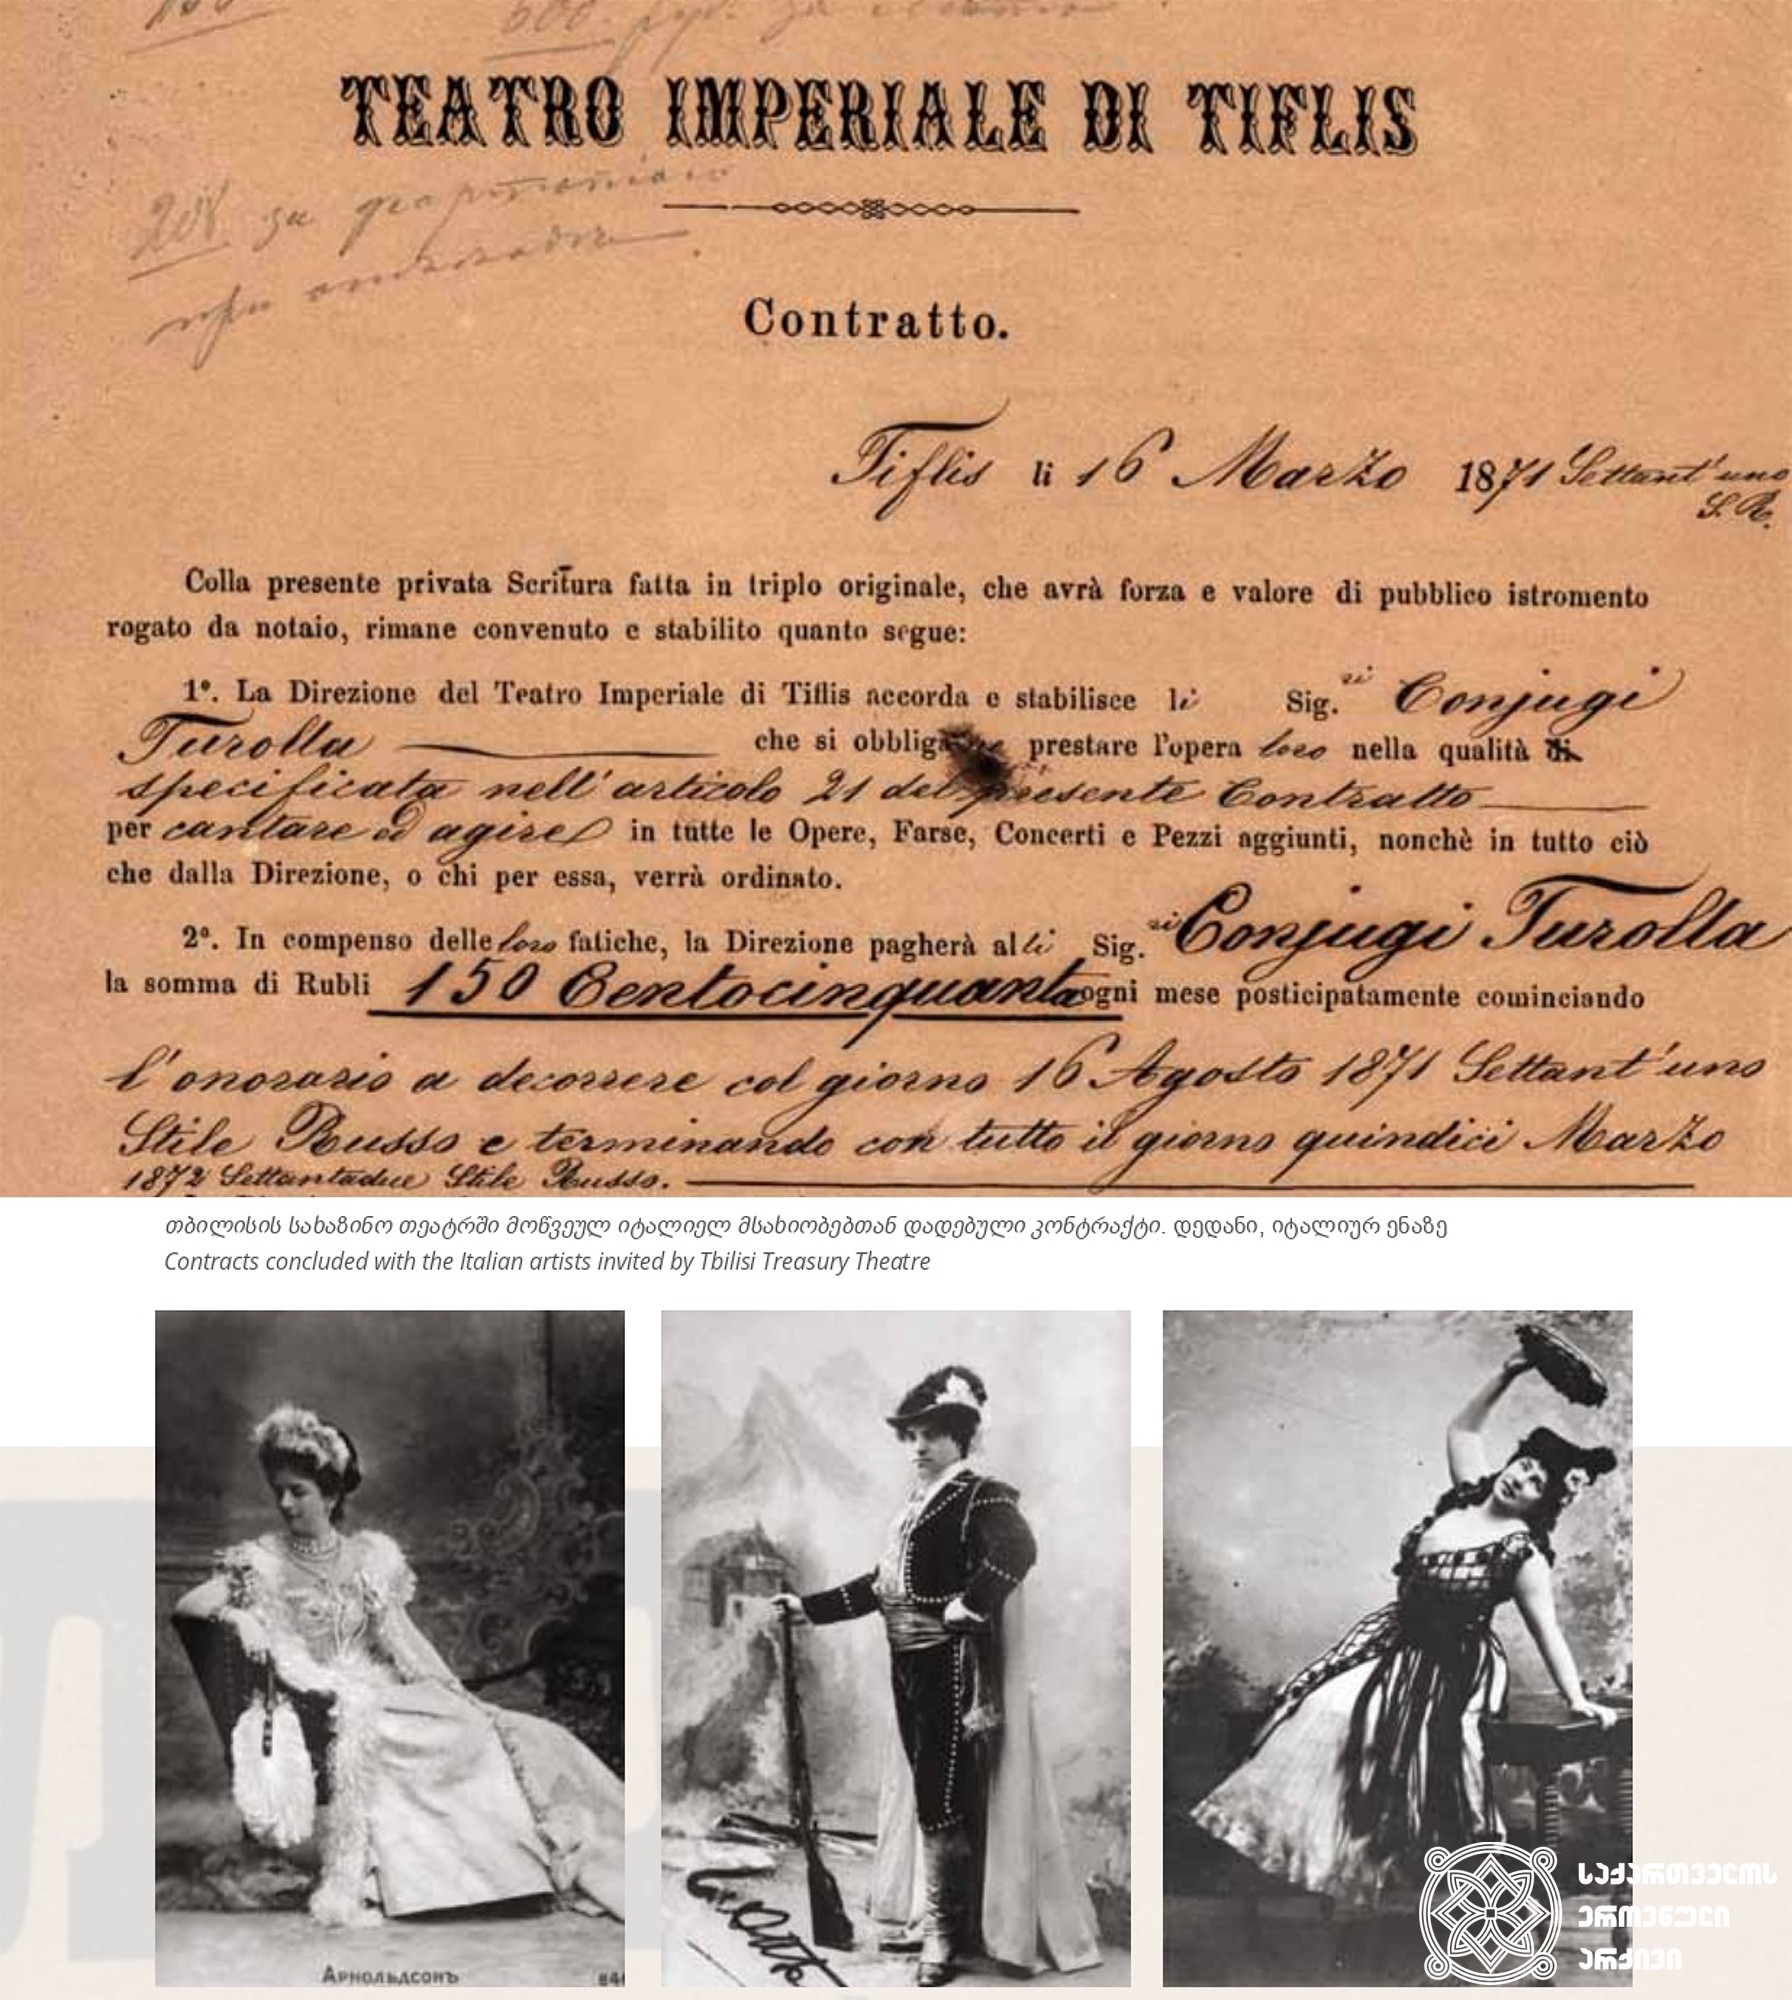 ზედა ფოტო - თბილისის სახაზინო თეატრში მოწვეულ იტალიელ მსახიობებთან დადებული კონტრაქტი. დედანი, იტალიურ ენაზე. <br>
თბილისი, 1871 წლის 16 მარტი. <br>
ქვედა ფოტო - მომღერალი არნოლდსონი ოპერიდან „ევგენი ონეგინი“. <br> 
მომღერალი ა. ბონაჩიჩი, დონ ხოზეს როლში, ბიზეს ოპერიდან „კარმენი“. <br>
მომღერალი მრავინი (მეცო სოპრანო), როლში ბიზეს ოპერიდან „კარმენი“.